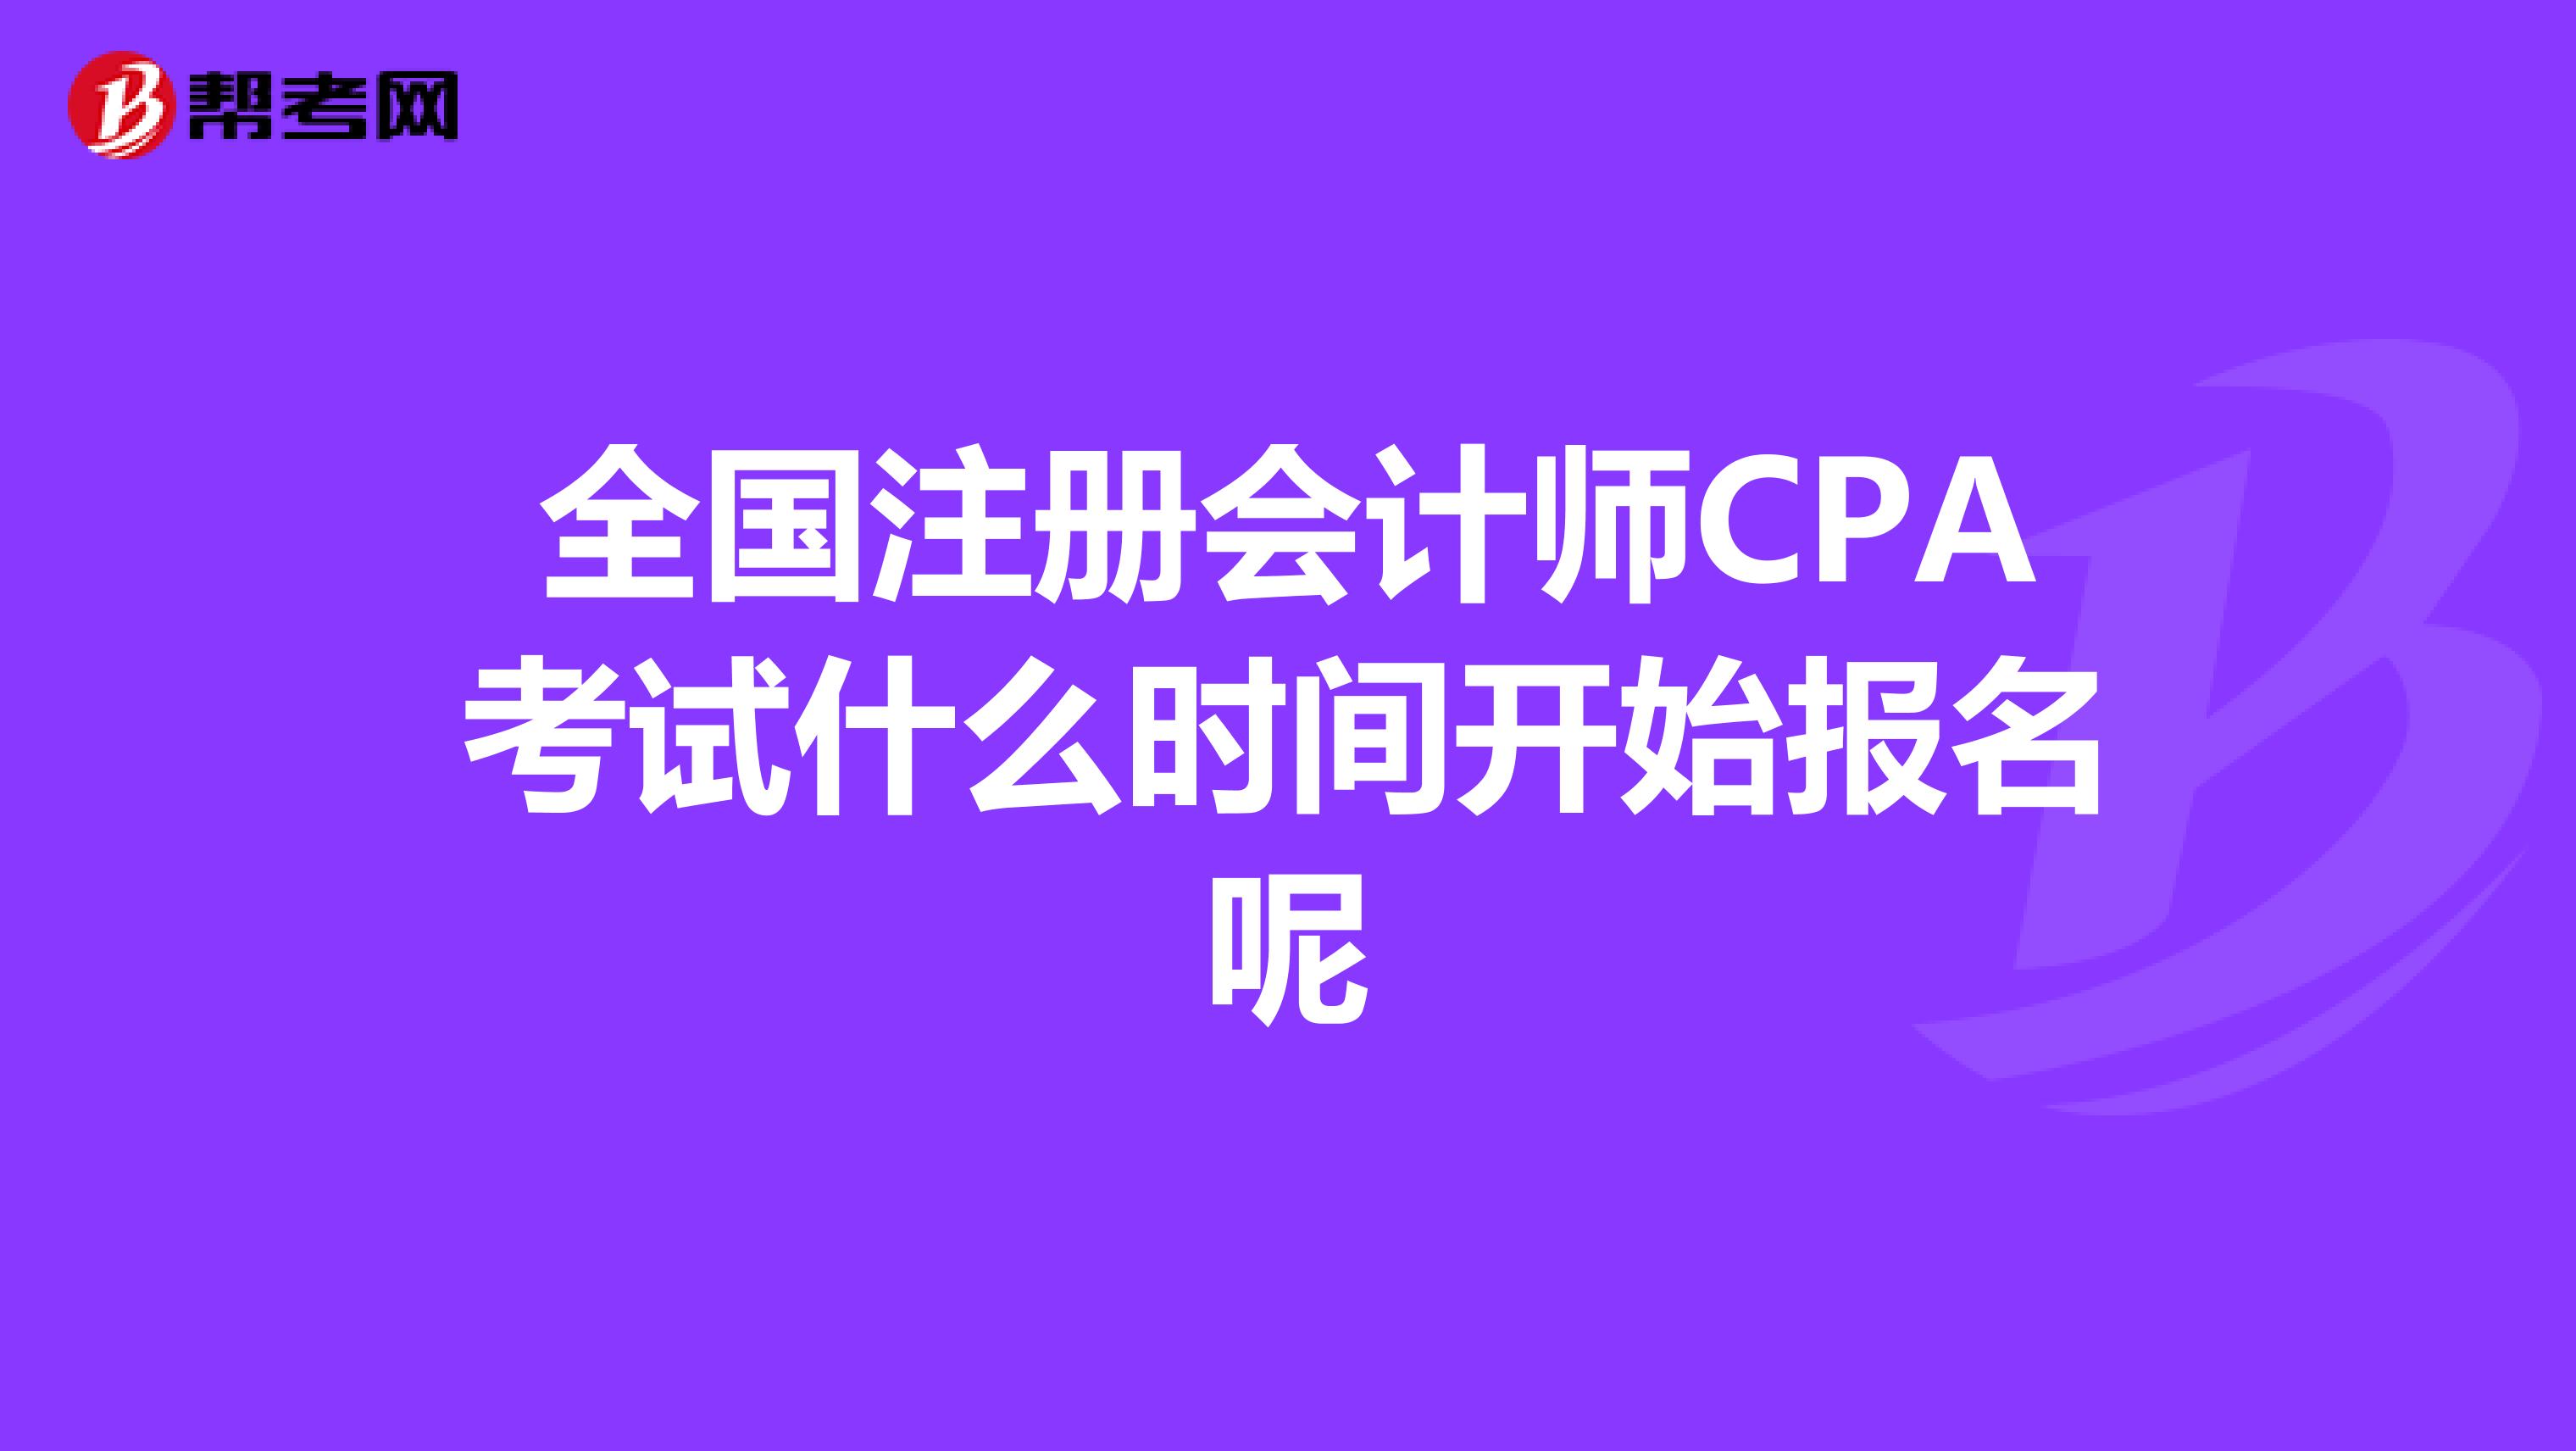 全国注册会计师CPA考试什么时间开始报名呢